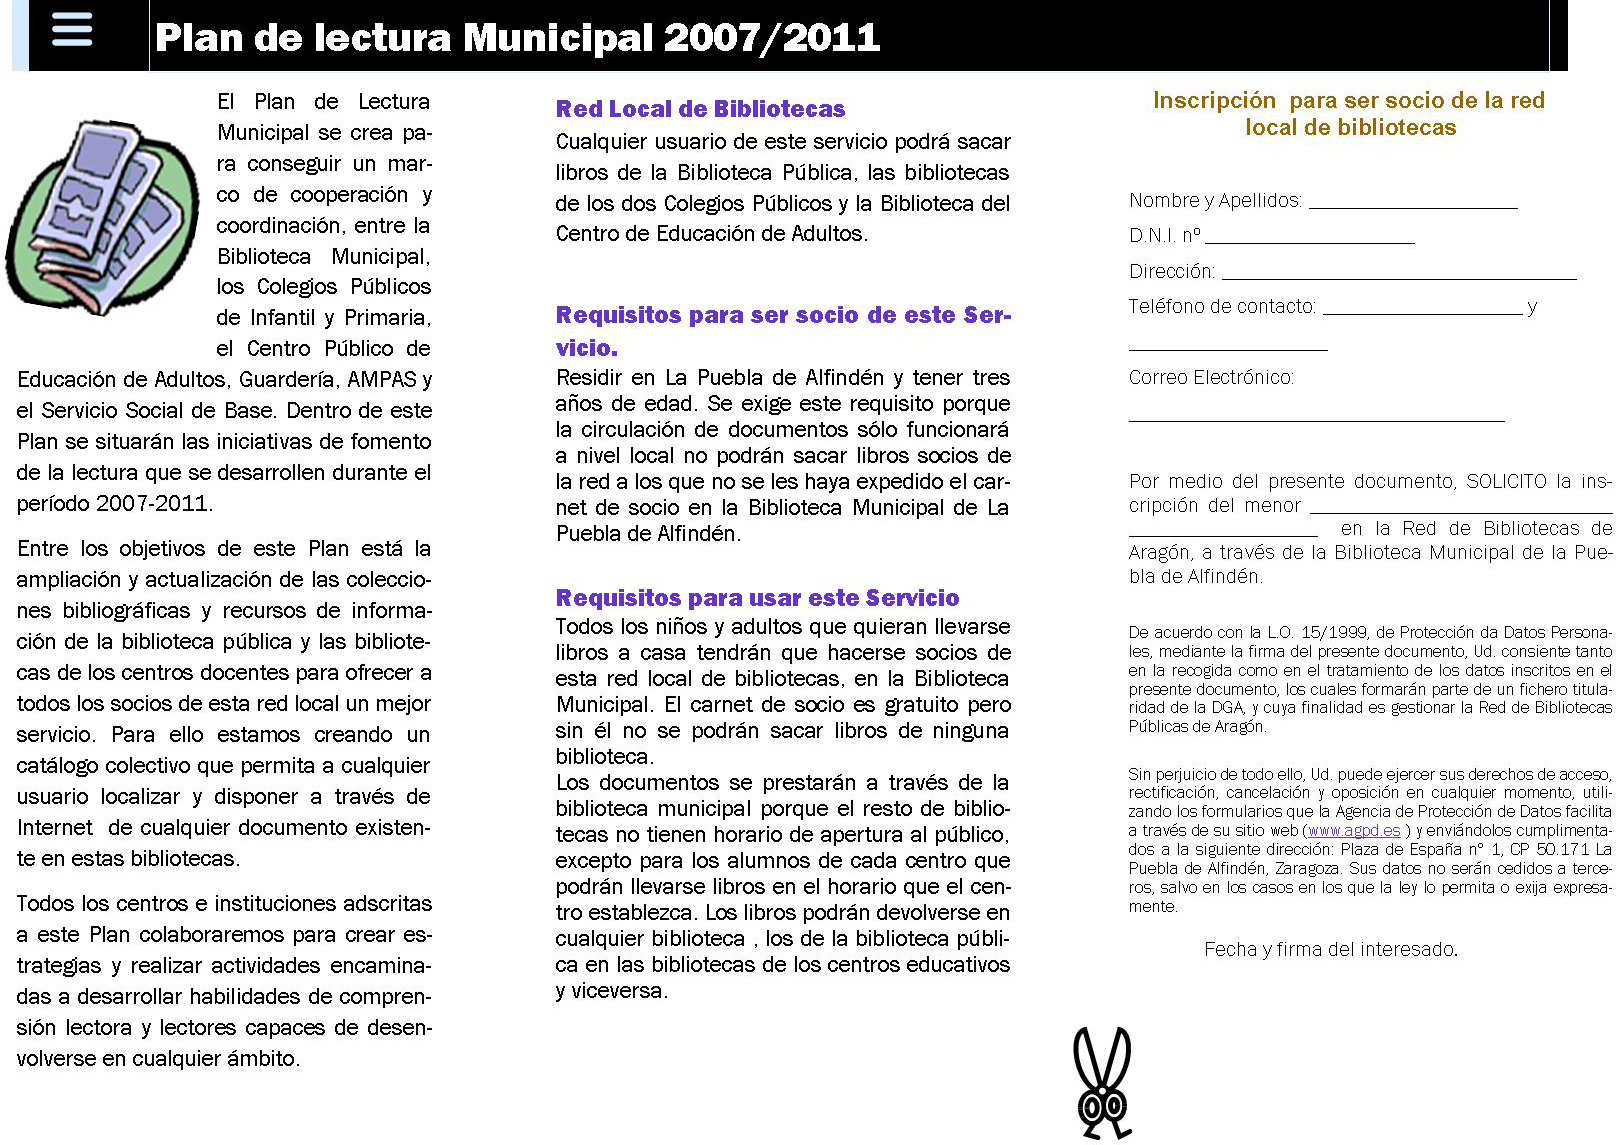 Plan de Lectura Municipal (2007-2015). La Puebla de Alfindén (Zaragoza) 13 Figura 4. Logotipo del Plan de Lectura Municipal. Copyright Ayuntamiento La Puebla de Alfindén.